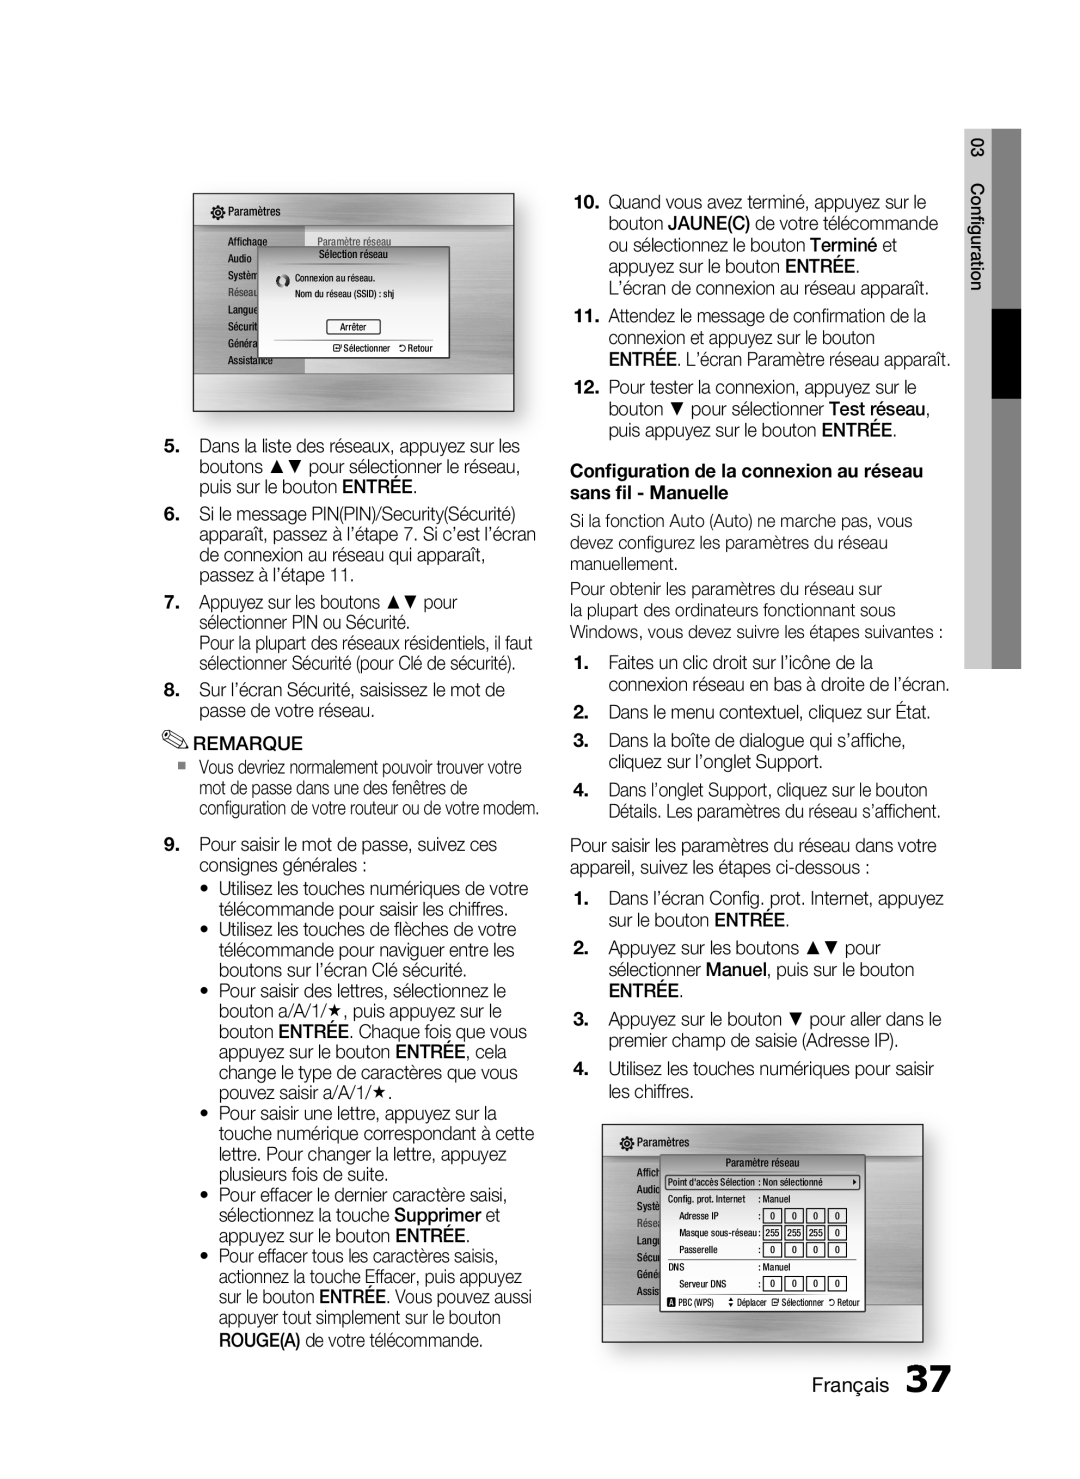 Samsung HT-C6200/XEF manual Conﬁguration de la connexion au réseau sans ﬁl - Manuelle, Français 